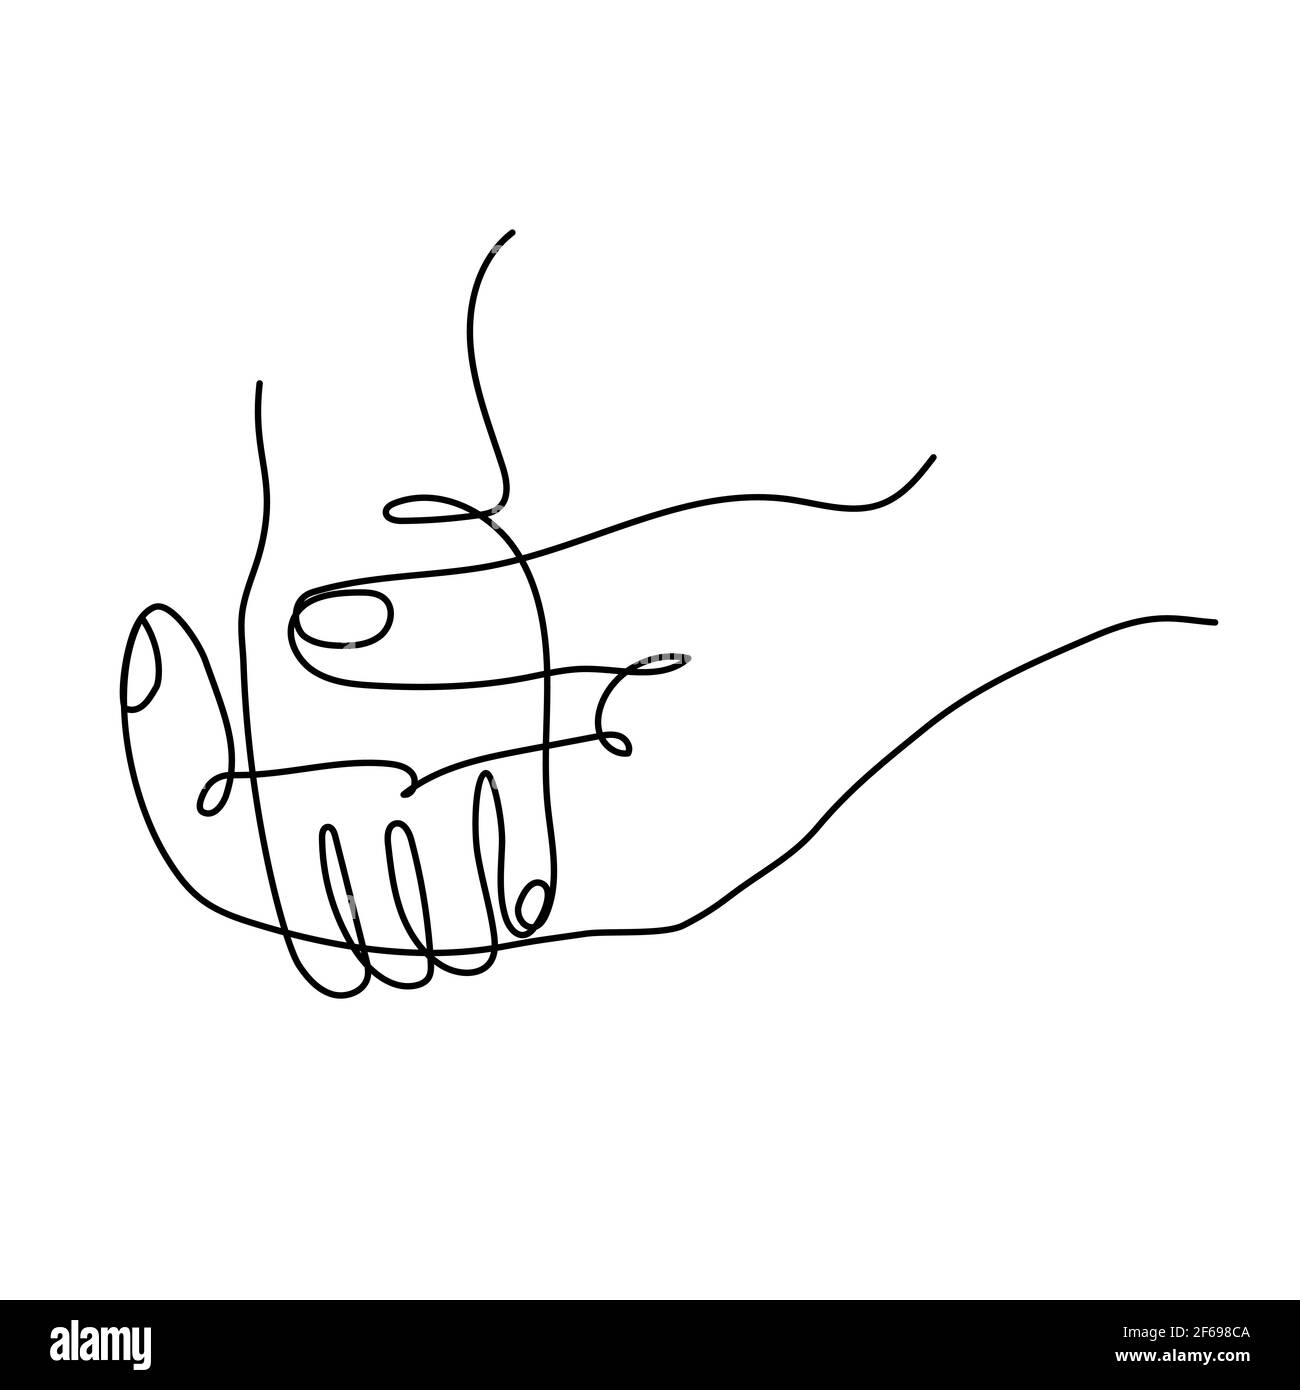 Ikone einer erwachsenen Elternhand, die eine kleine Kinderhand hält. Einfache Vektorgrafik Stock Vektor